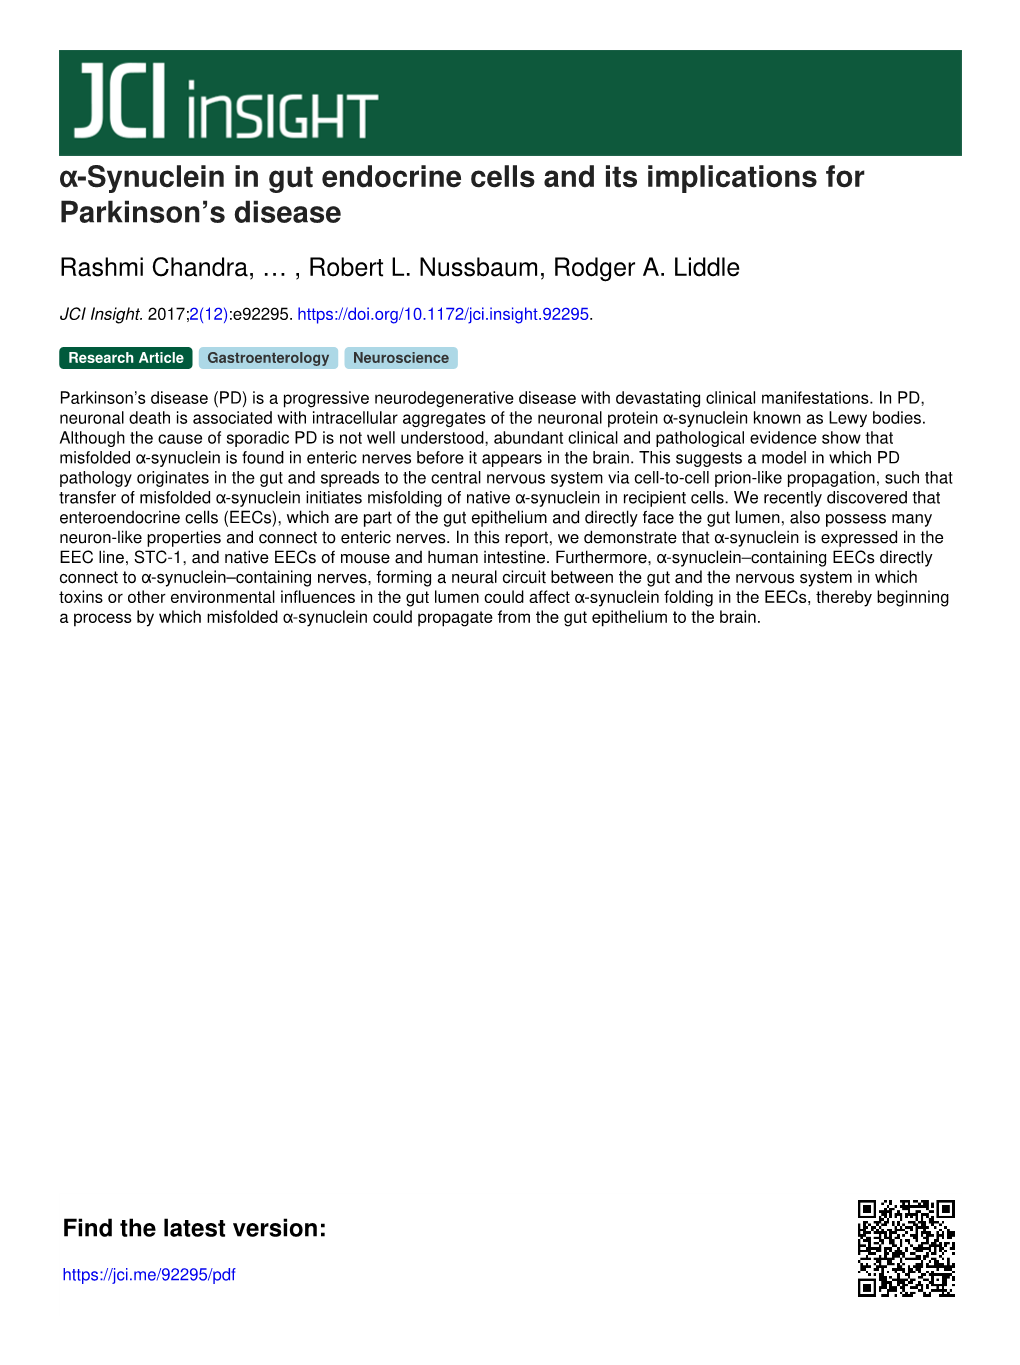 Α-Synuclein in Gut Endocrine Cells and Its Implications for Parkinson's